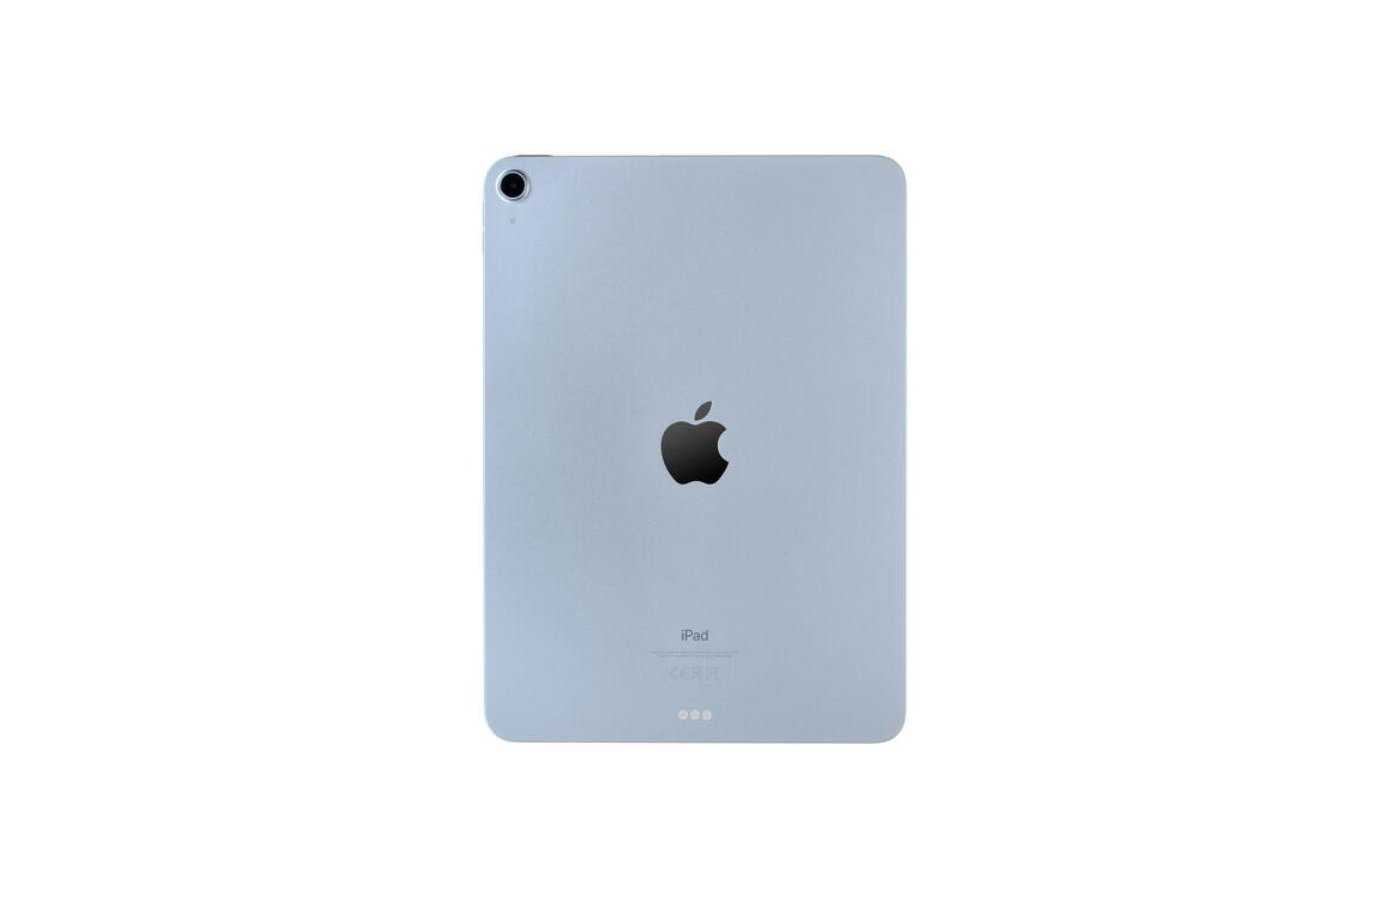 Ipad air 5 256 gb. Apple IPAD Air 2020 64gb. Apple IPAD Air 2020 Wi-Fi 64 ГБ. Планшет Apple IPAD Air 2020 64gb Wi-Fi + Cellular mygy2ru/a, 64gb, 3g, 4g, IOS. Apple IPAD Air (2020) 256gb Wi-Fi + Cellular Green.